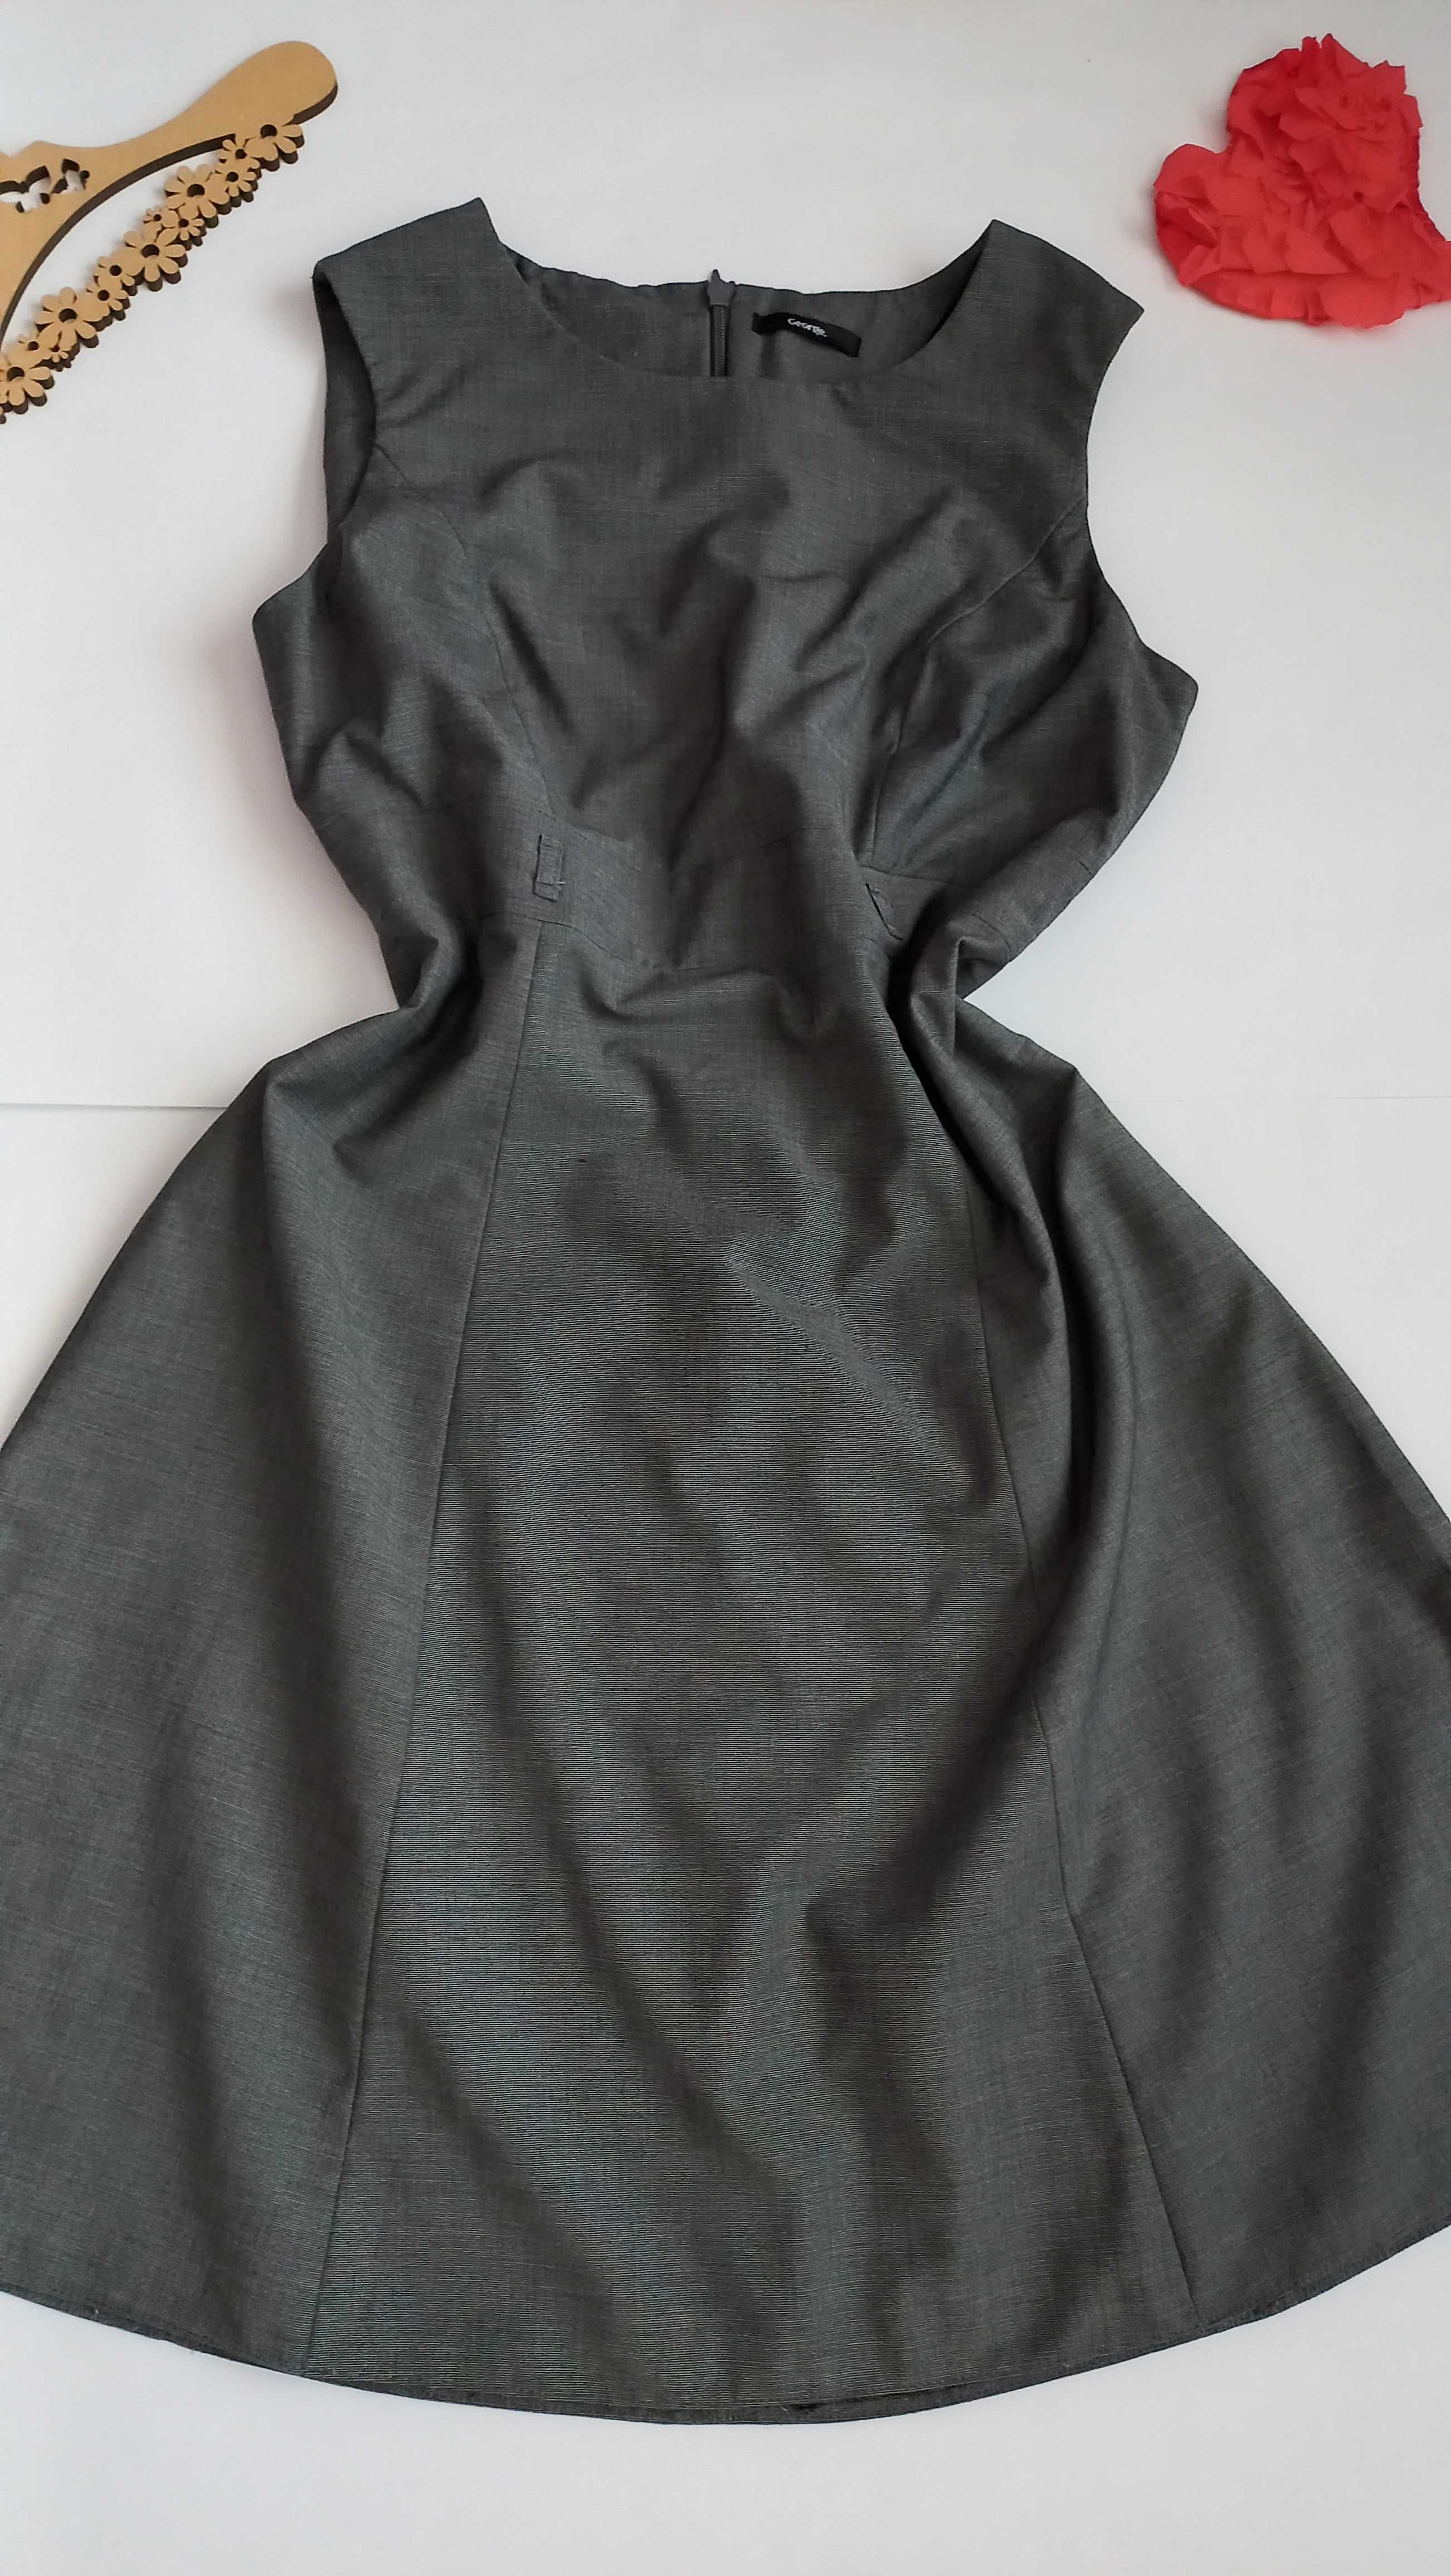 Сіре плаття сарафан 50 52 розмір міді